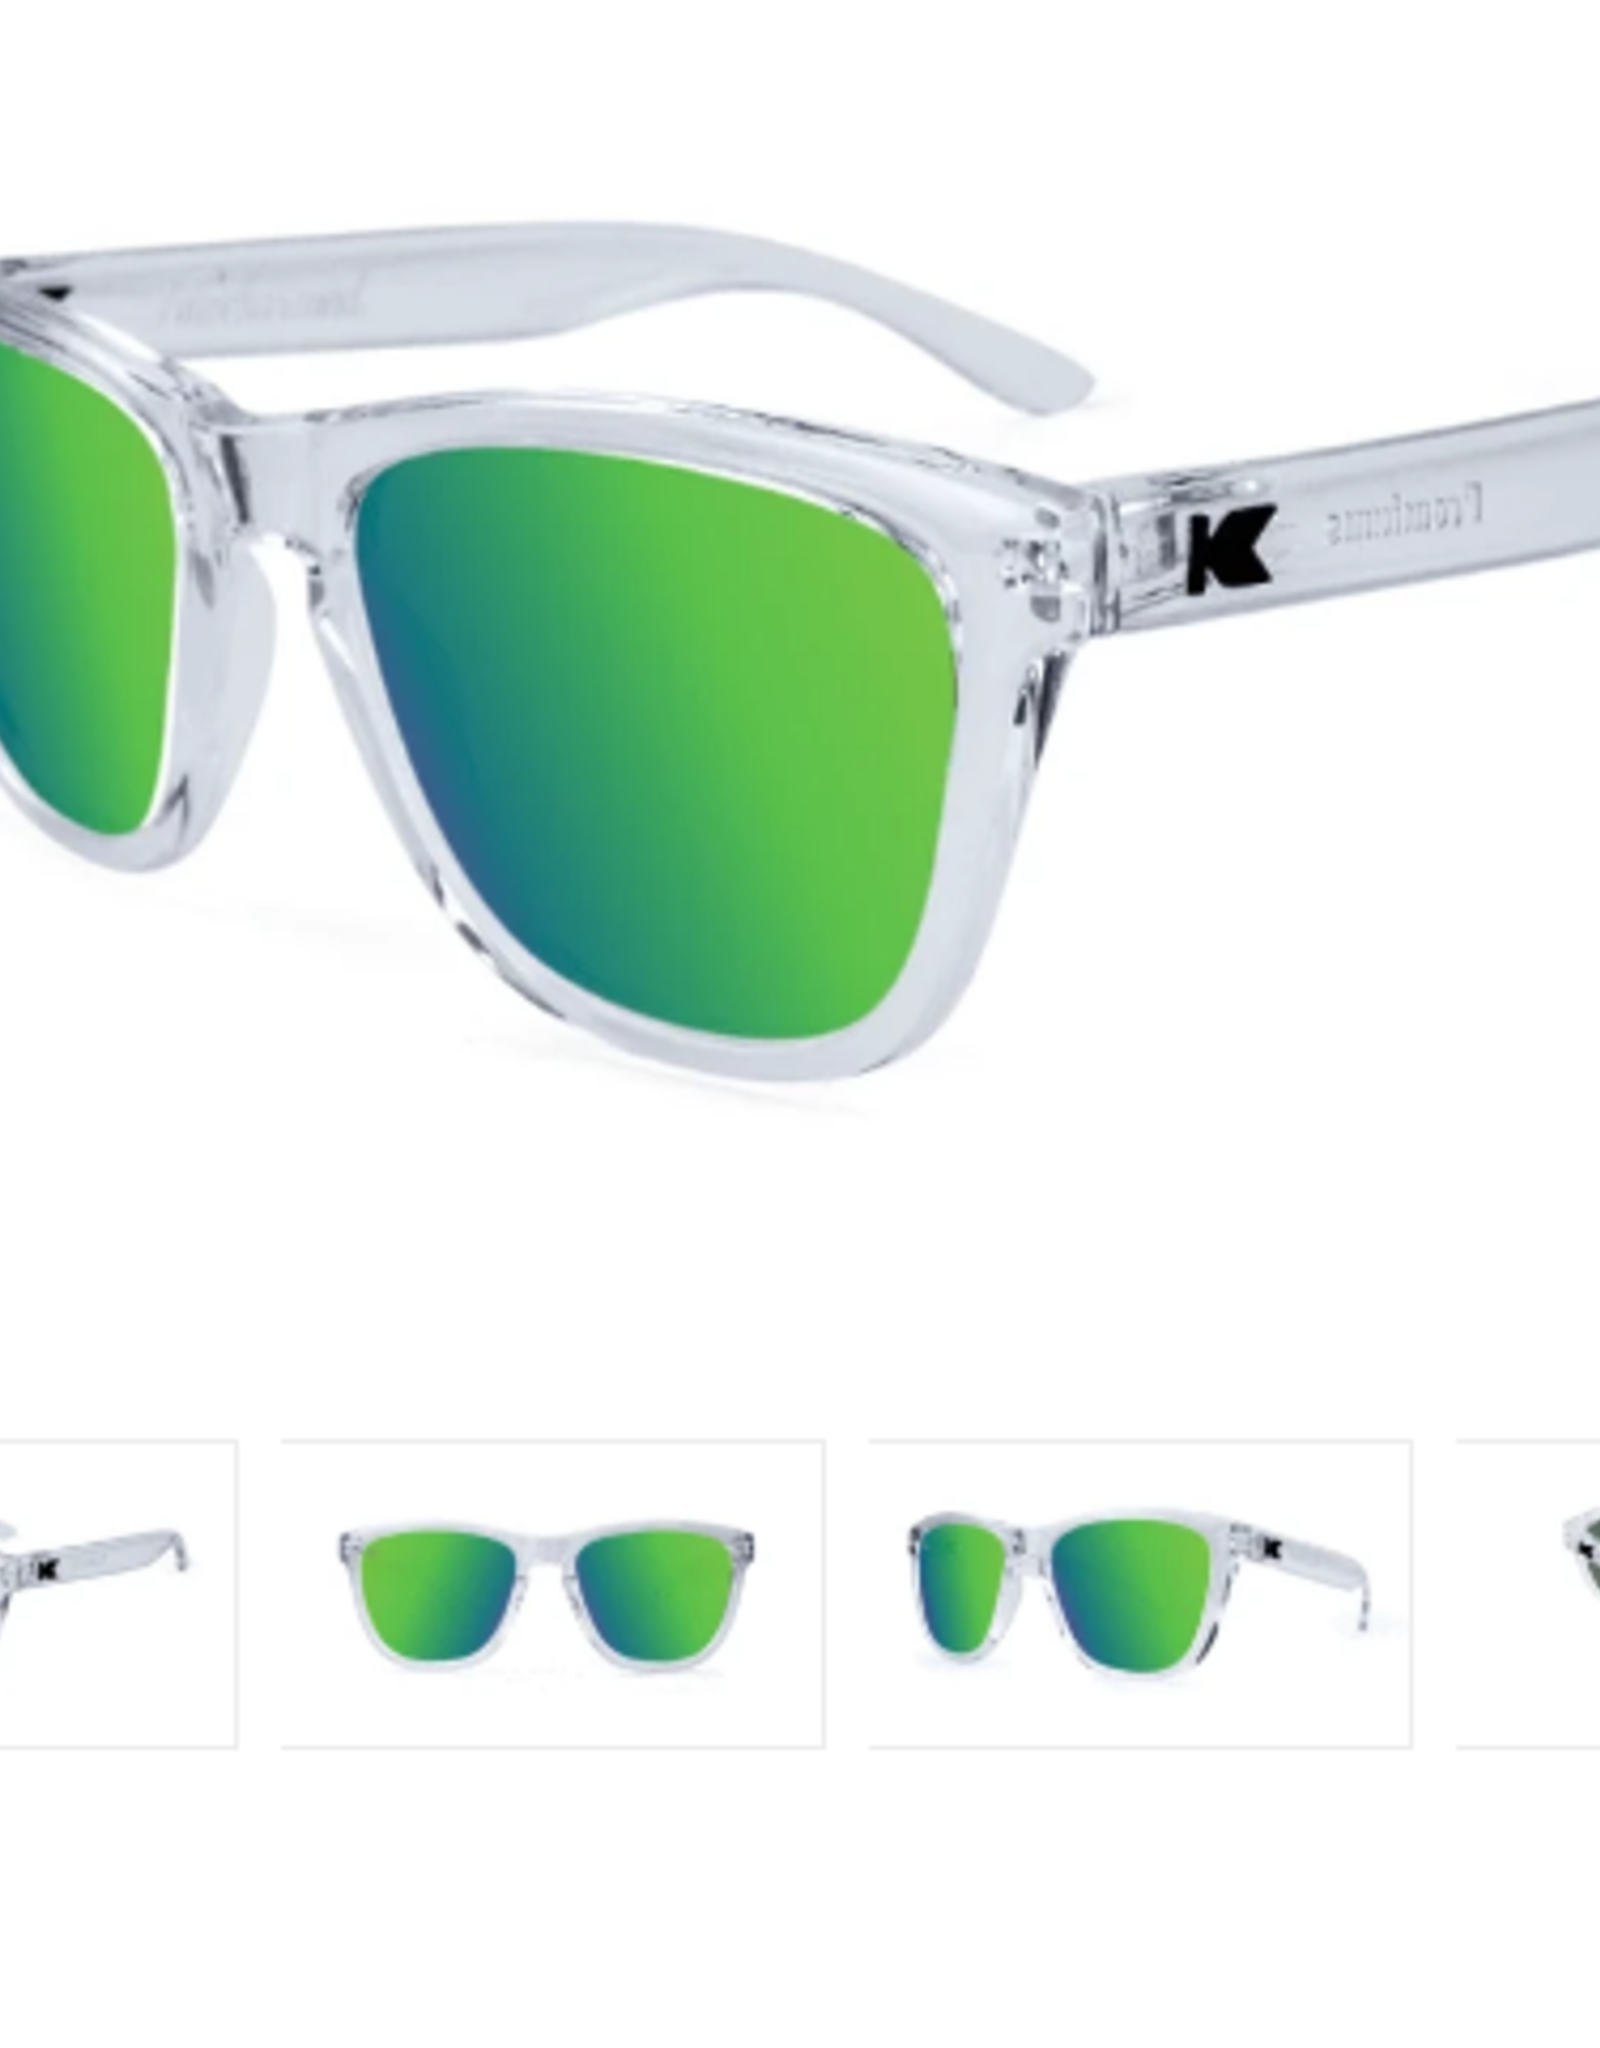 Knockaround Knockaround - Sunglasses